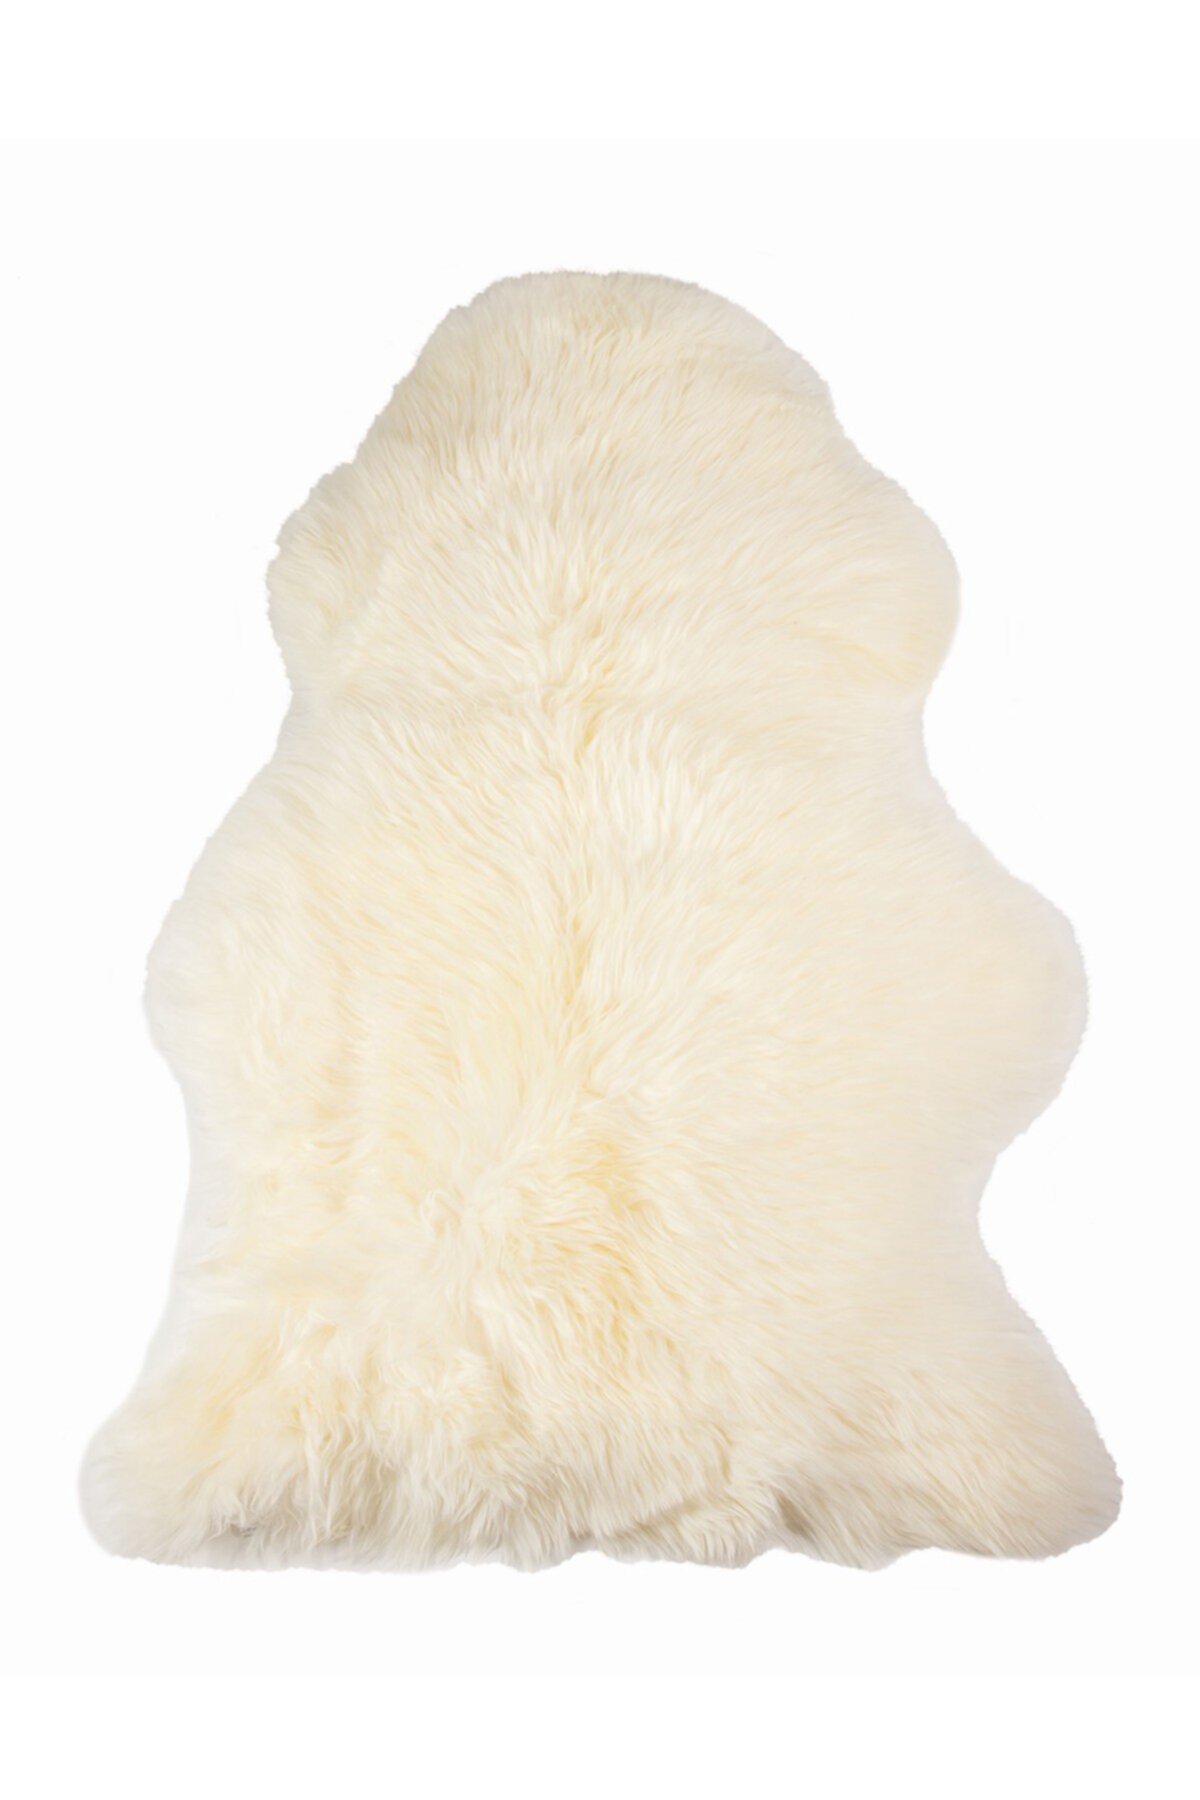 Пледы из натуральной овчины Milan 24 "x 36" - слоновая кость Natural